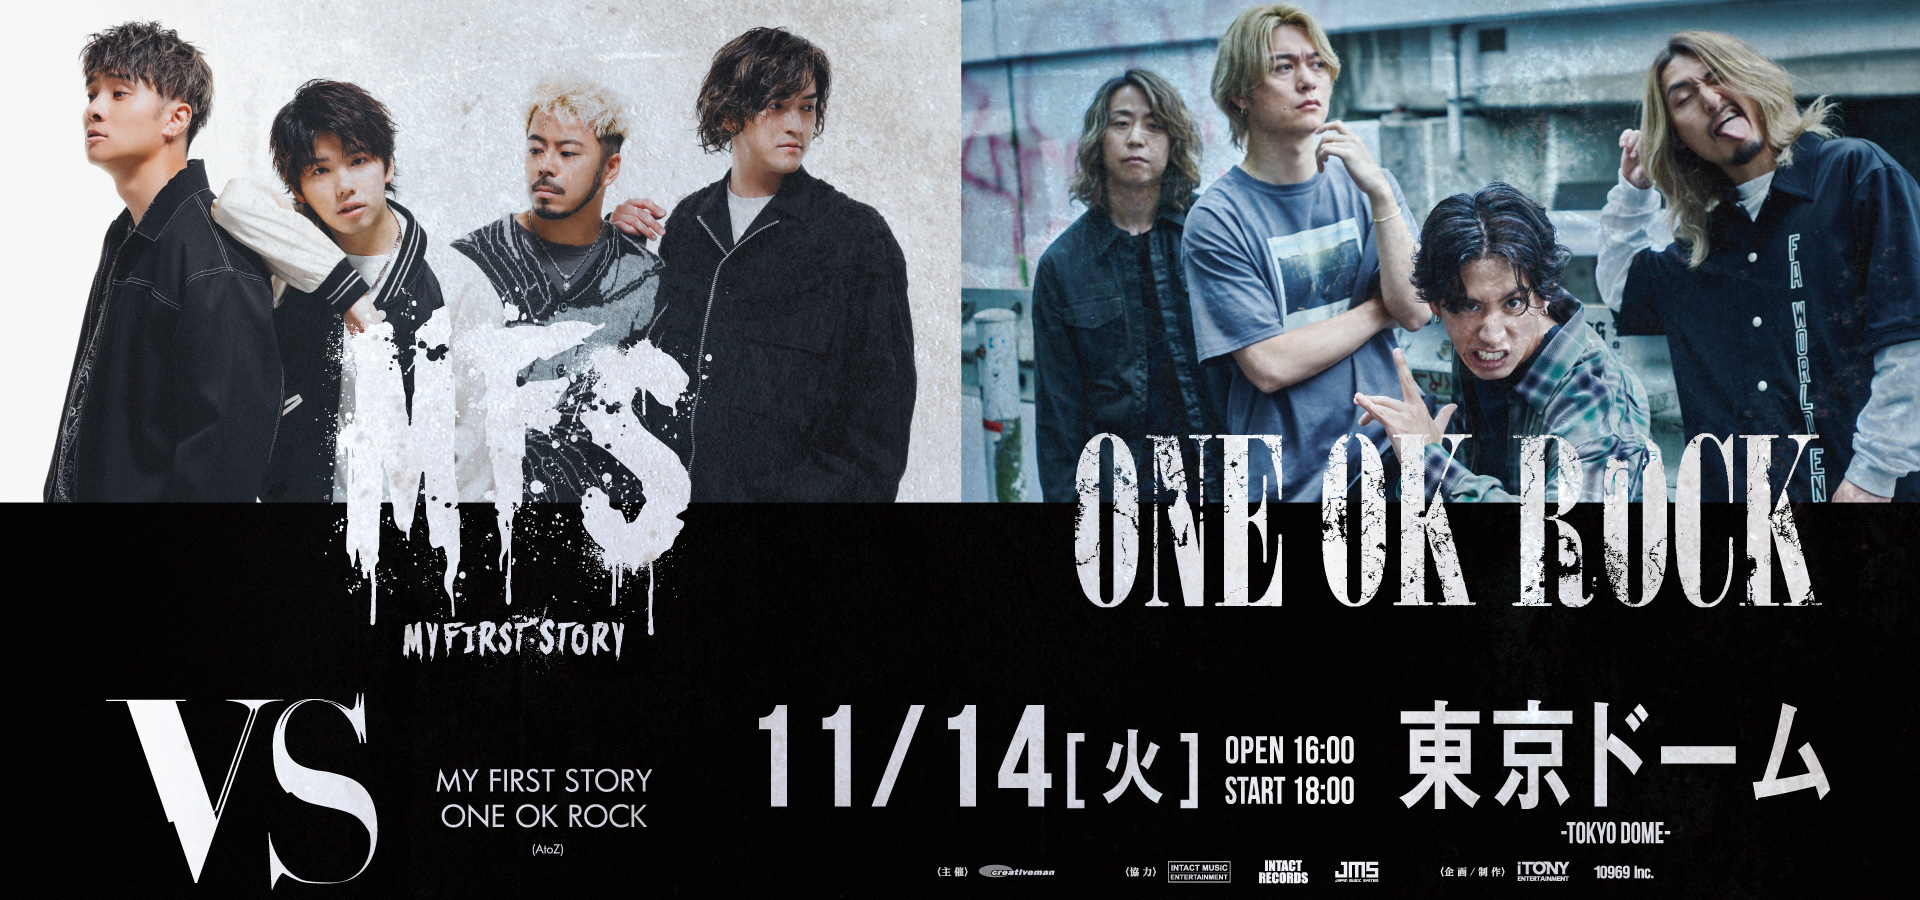 VS 【MY FIRST STORY / ONE OK ROCK (AtoZ)】 | iTONY